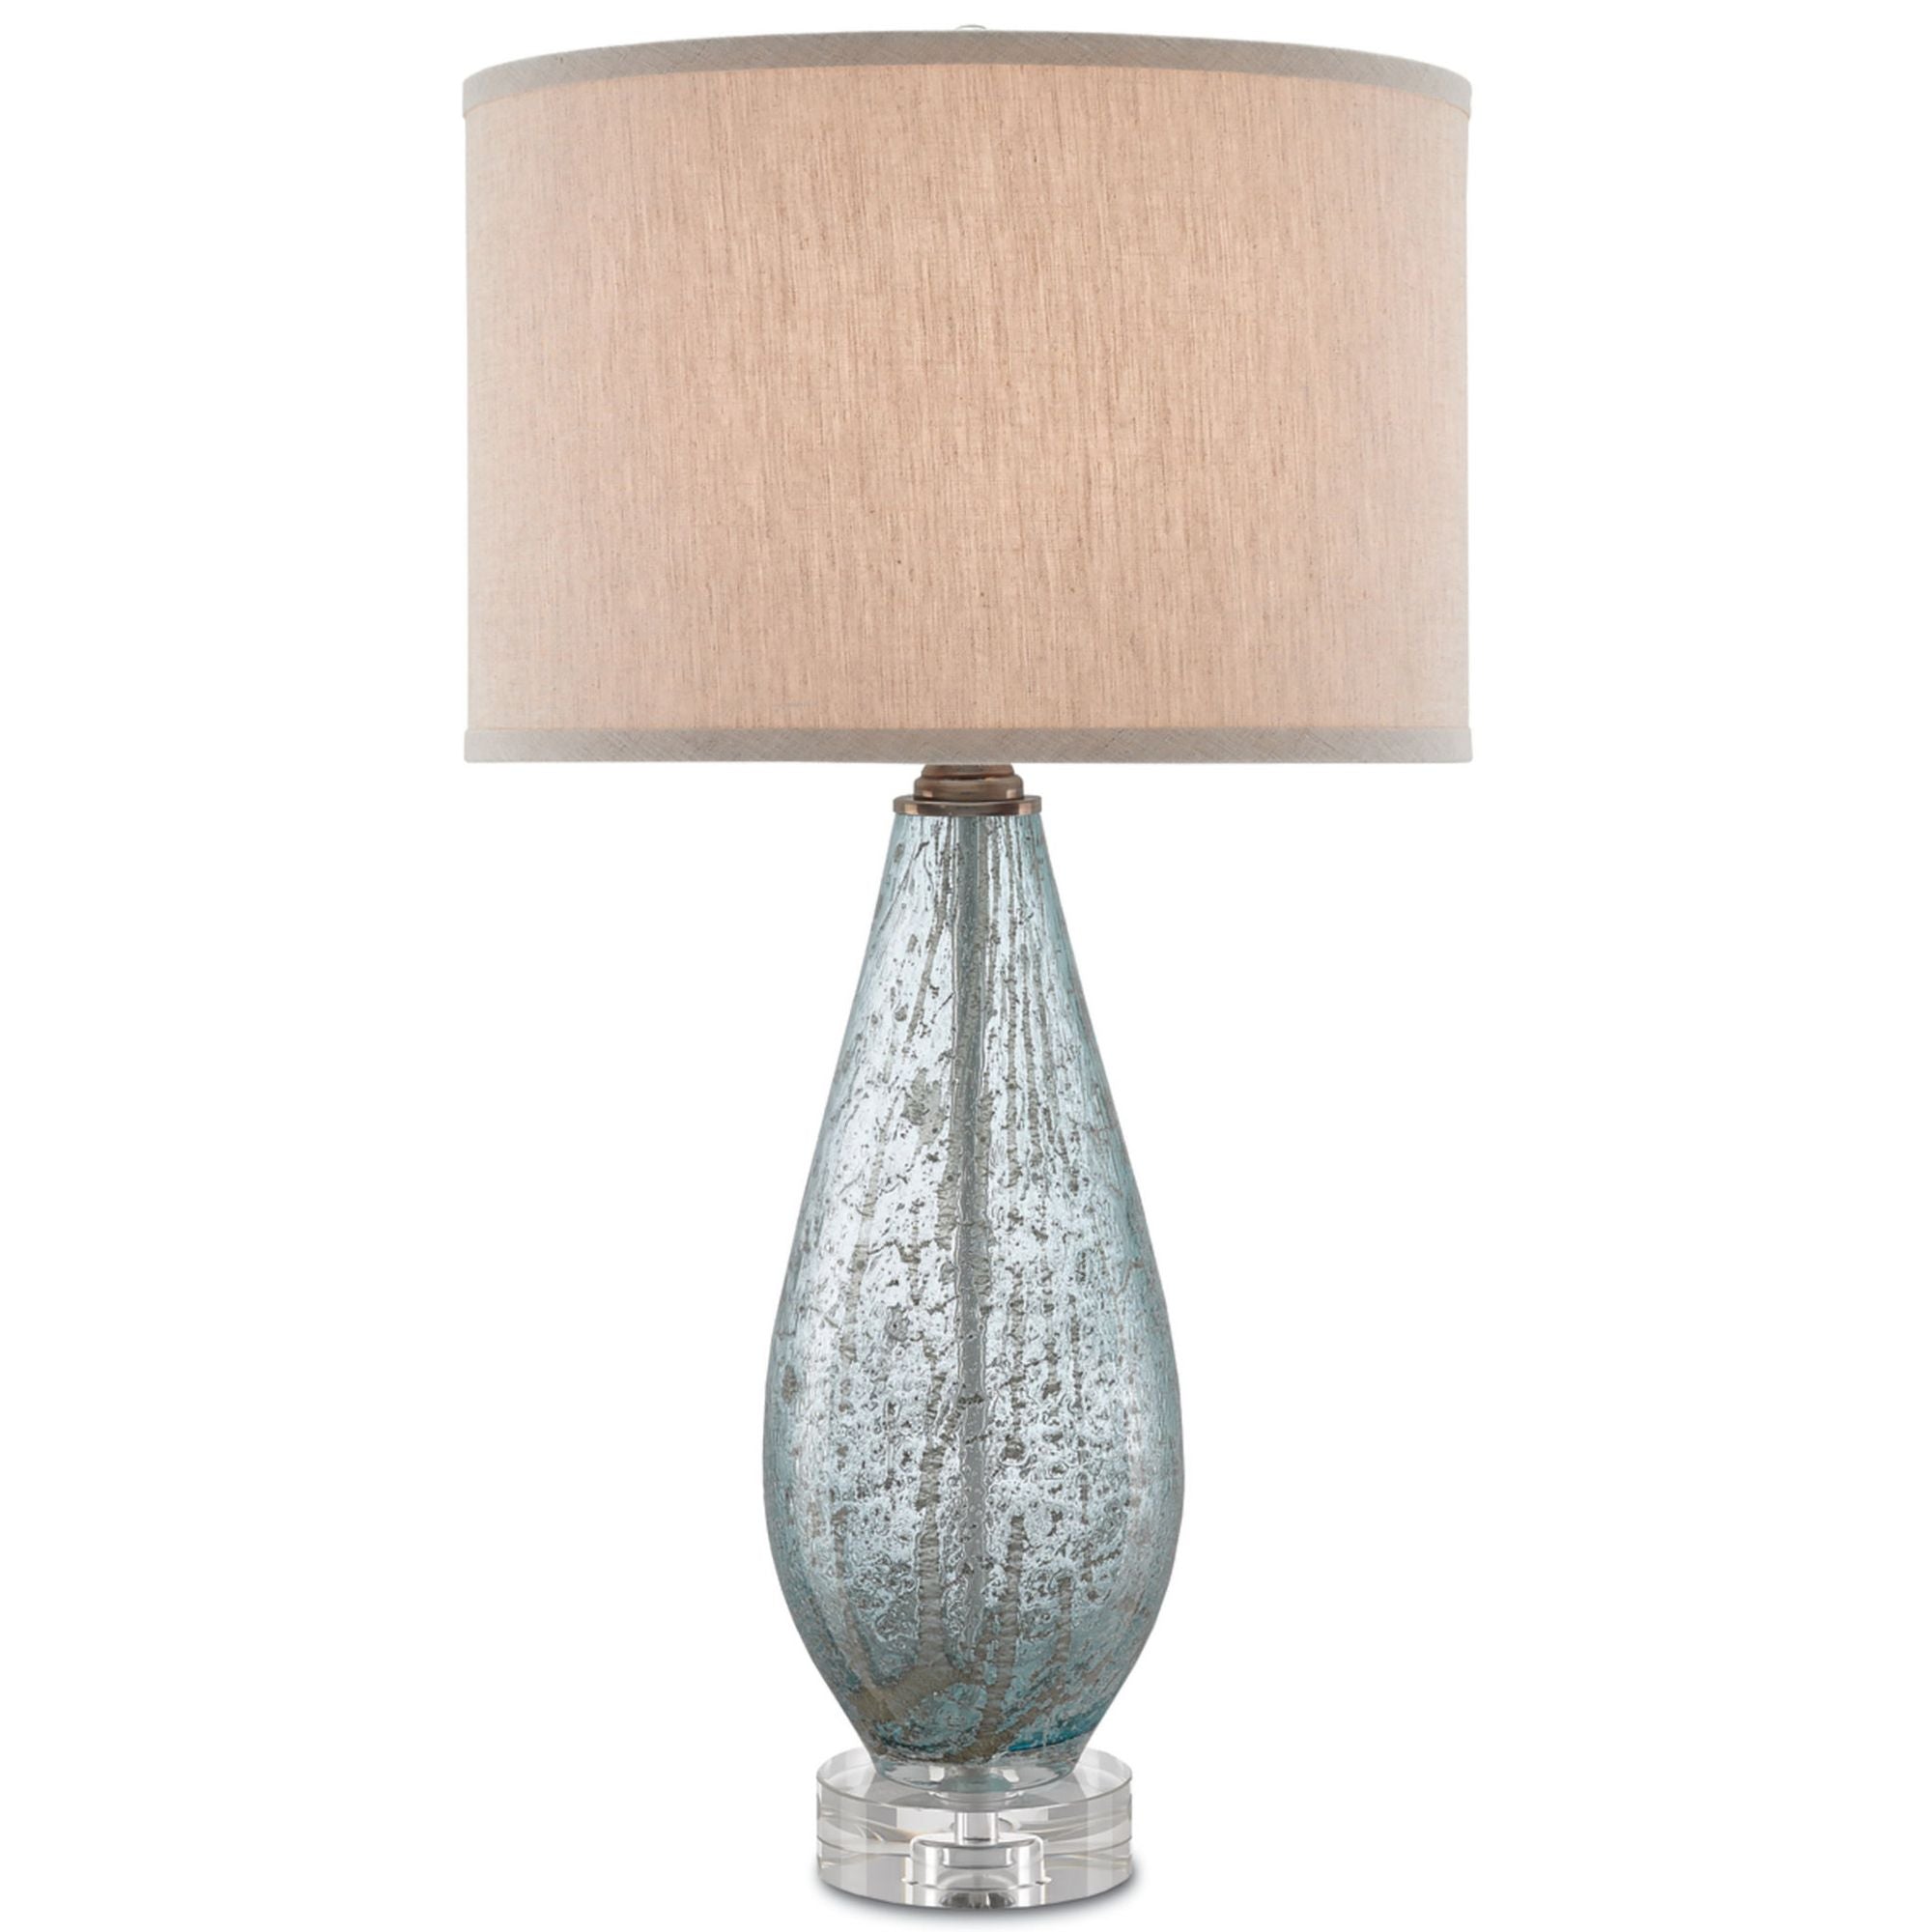 Optimist Blue Table Lamp - Pale Blue Speckle